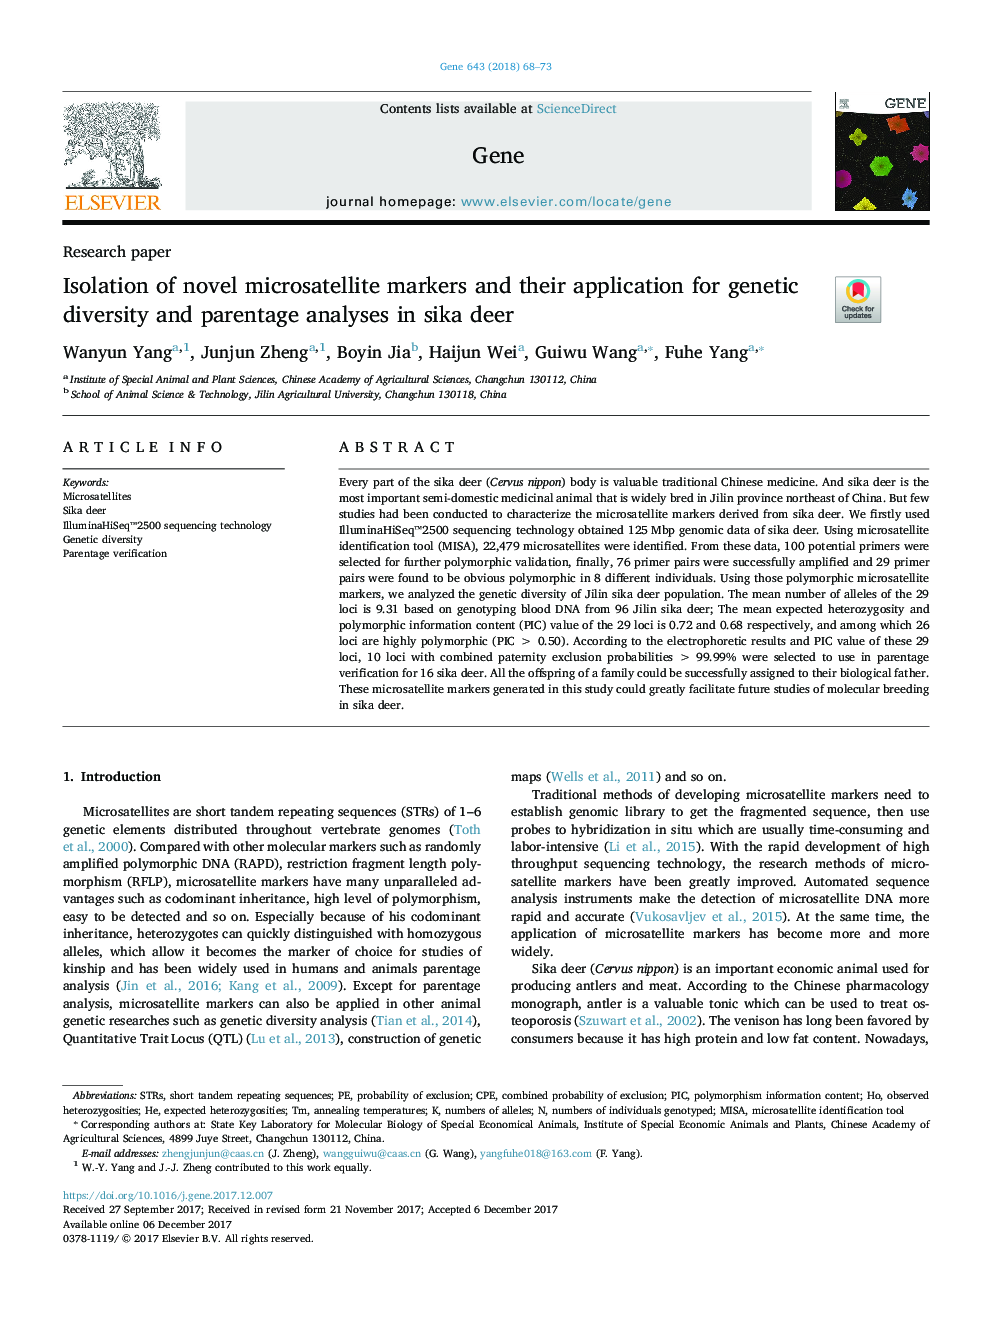 جداسازی مارکرهای ریزماهواره جدید و کاربرد آن برای تجزیه و تحلیل تنوع ژنتیکی و تجزیه و تحلیل خانواده در گوزن سیکا 